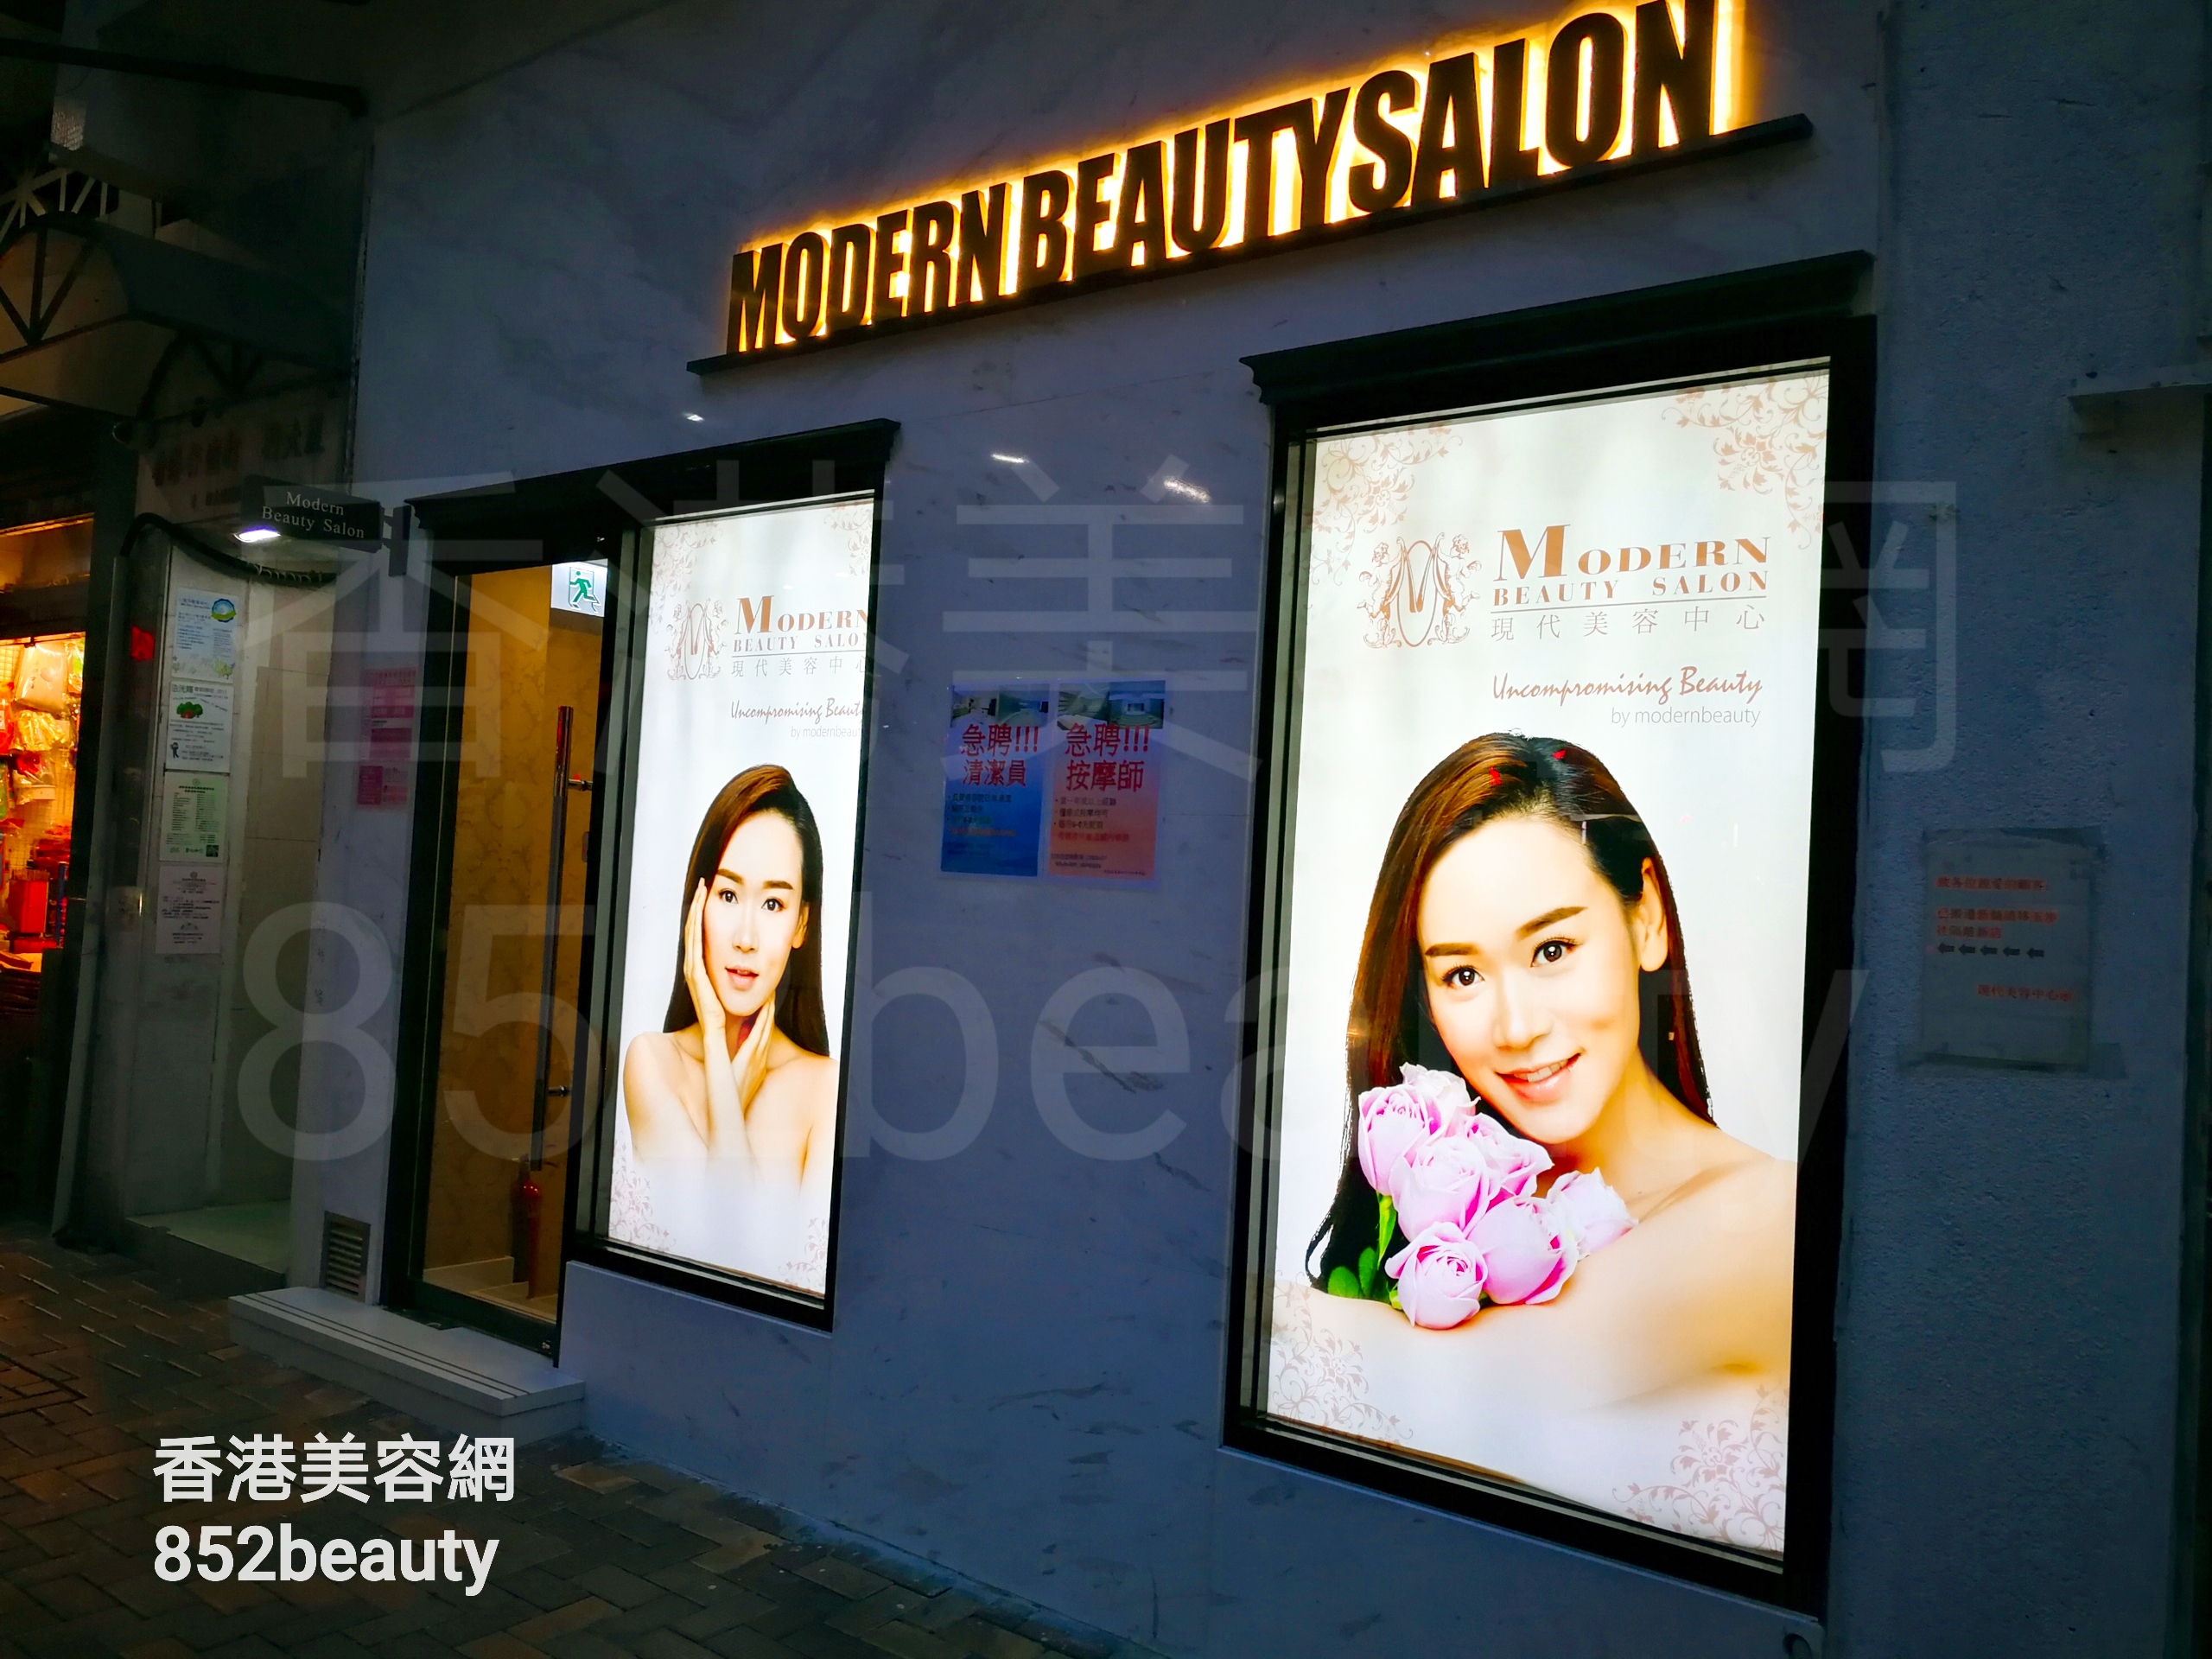 美容院 Beauty Salon: 現代美容中心 (香港仔店)